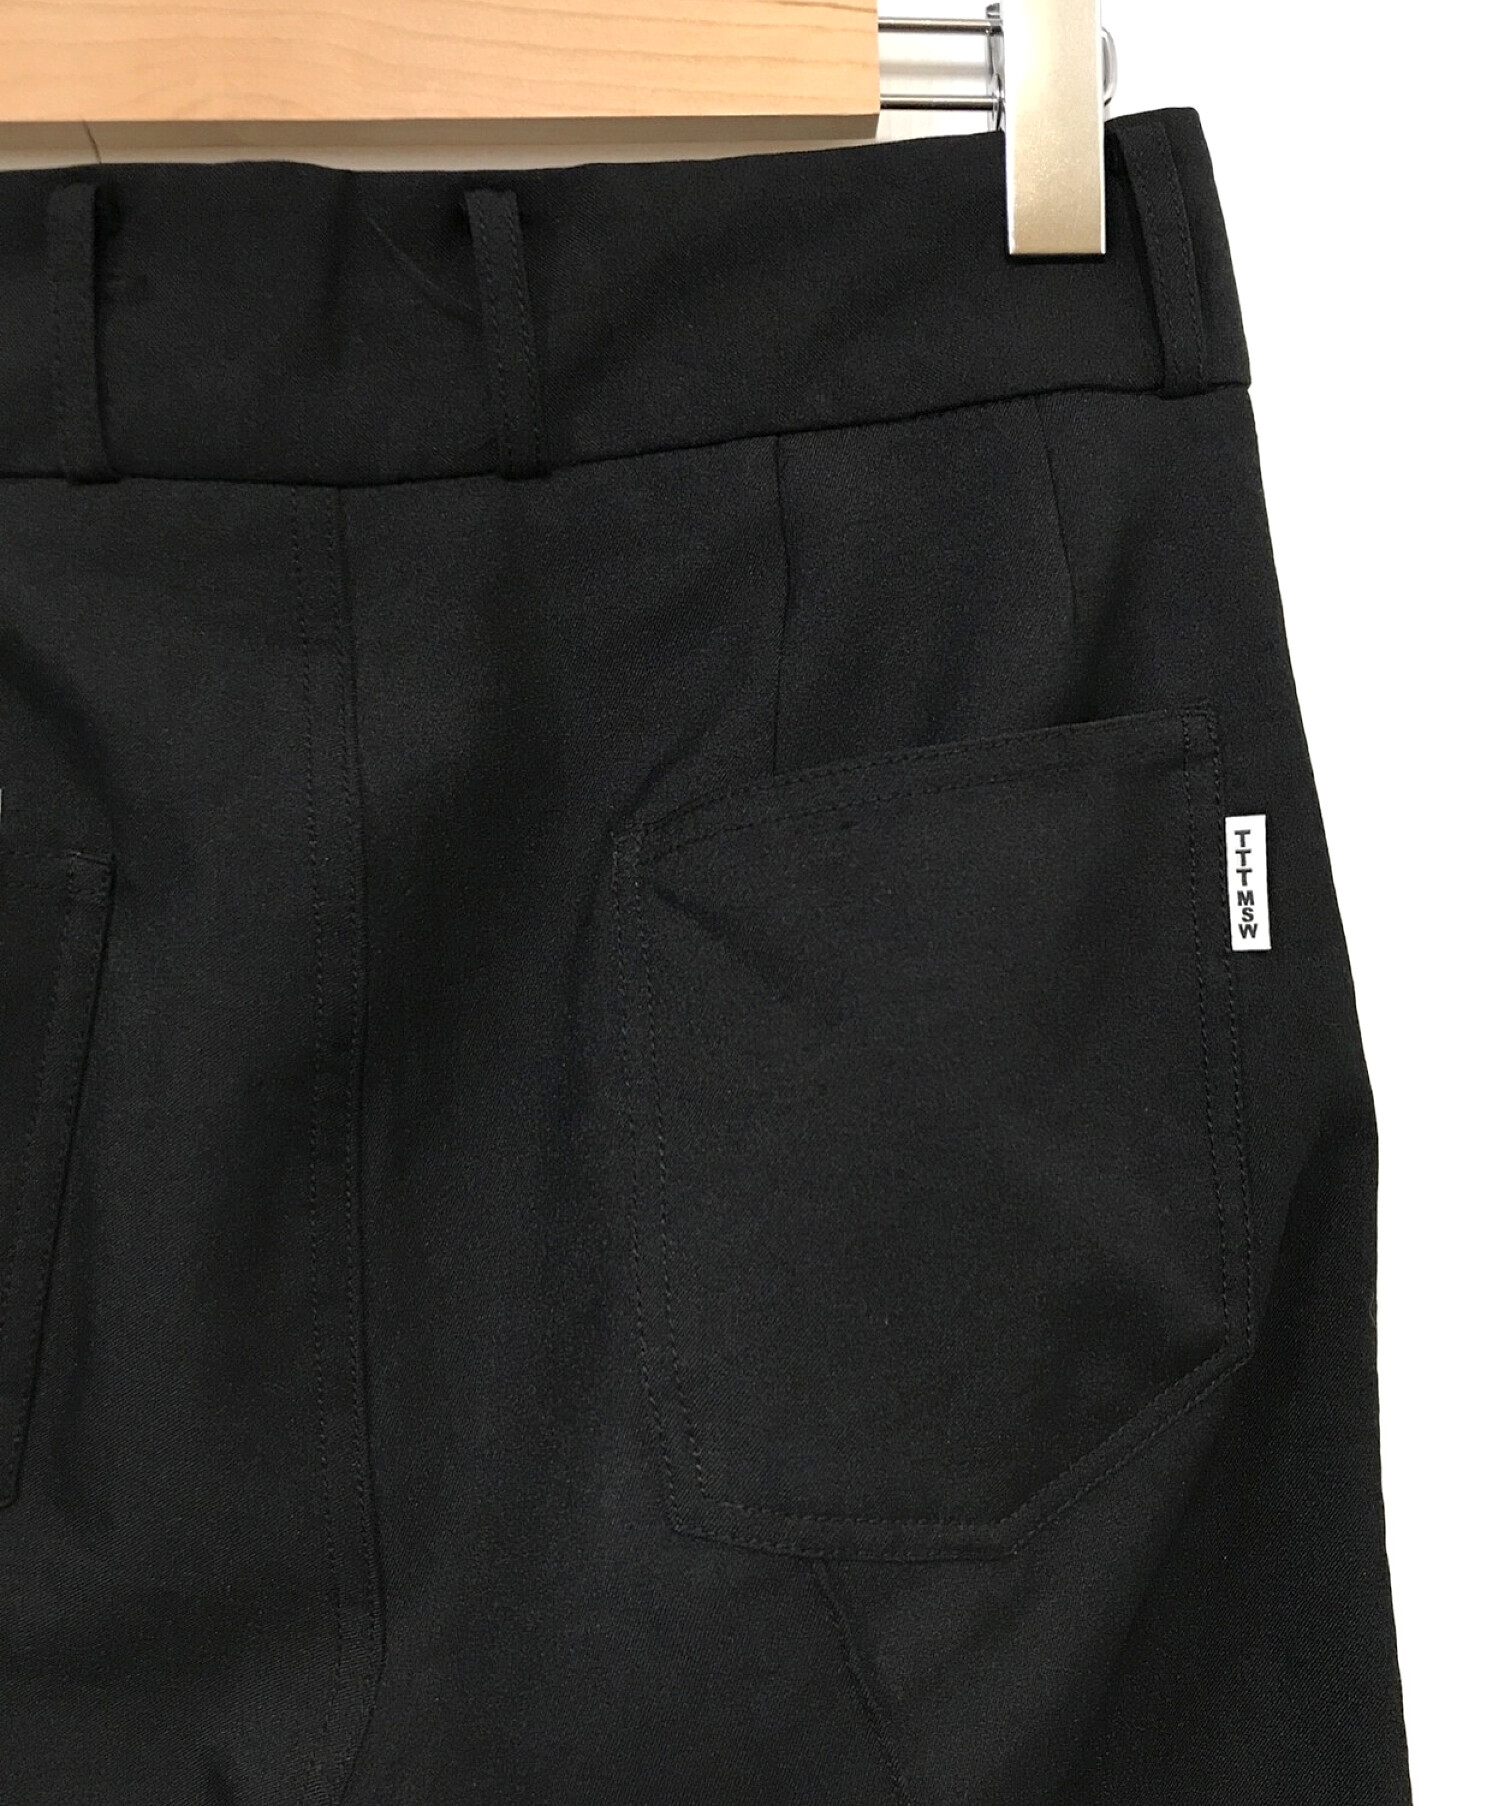 TTT MSW (ティーモダンストリートウェア) New Standard Pants ブラック サイズ:M